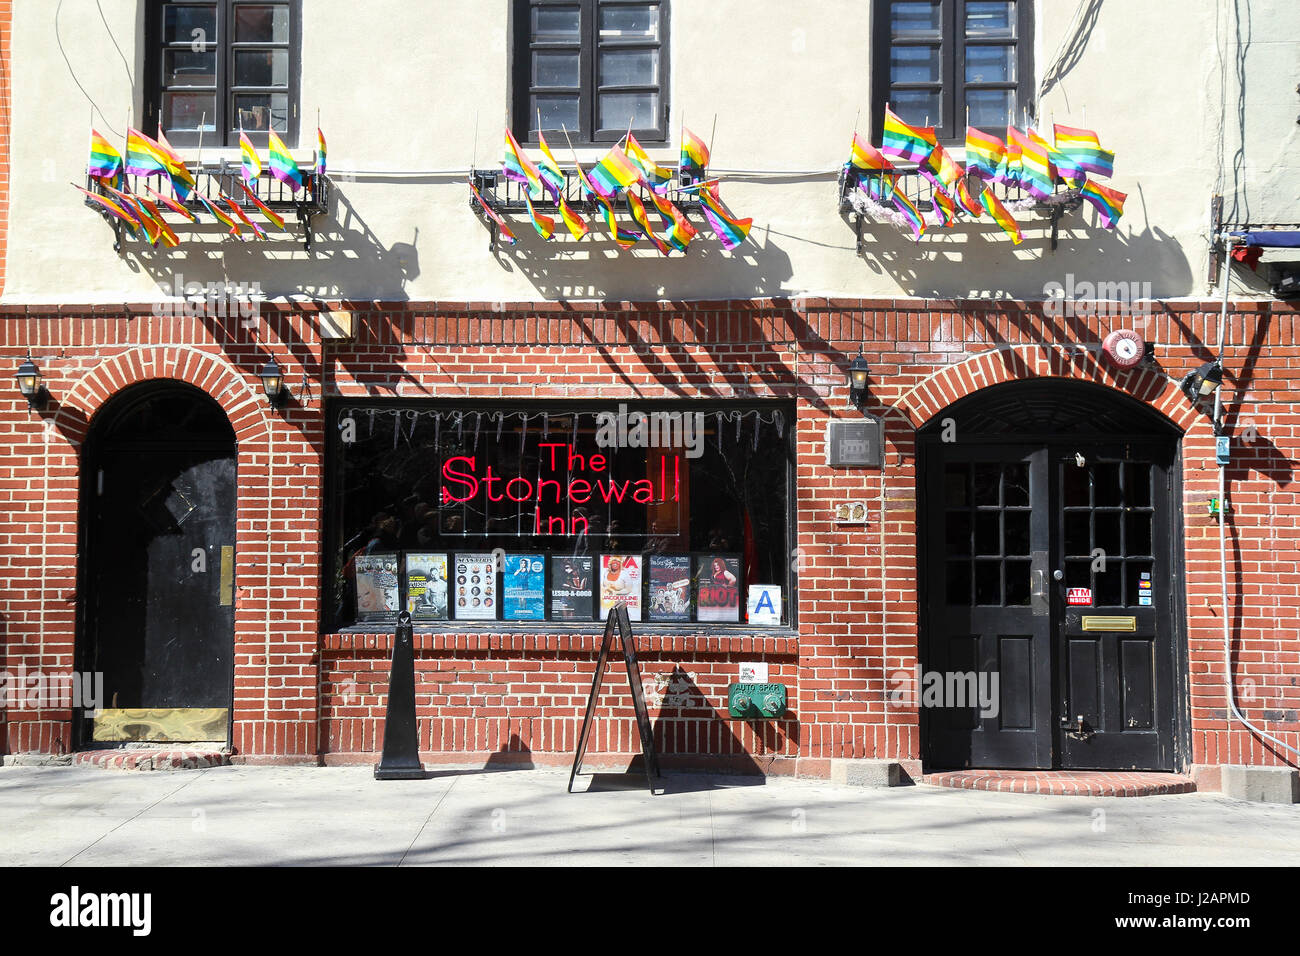 El Stonewall Inn, en Greenwich Village, Nueva York, Nueva York, Estados Unidos.Sitio de los disturbios de Stonewall en 1969, importantes en la lucha por los derechos de LGBT Foto de stock